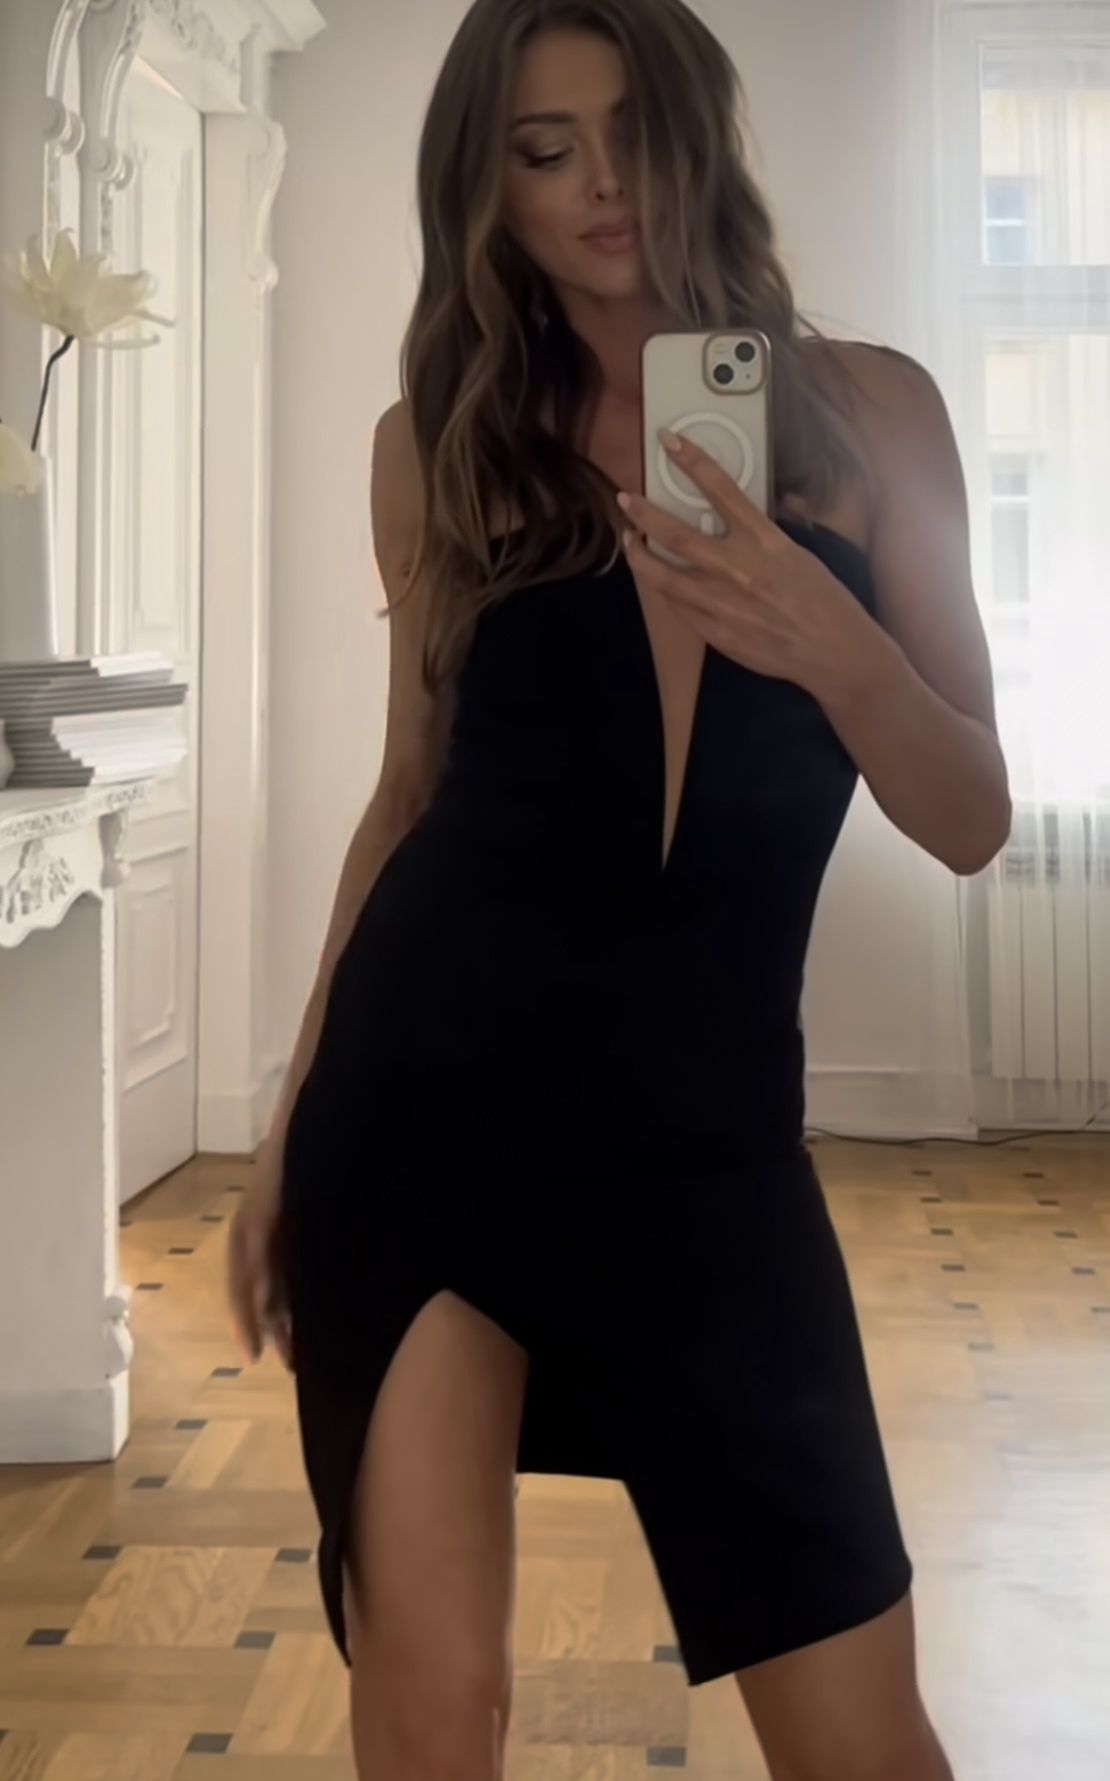 Joanna Opozda w małej czarnej z głębokim wycięciem
Instagram/asiaopozda